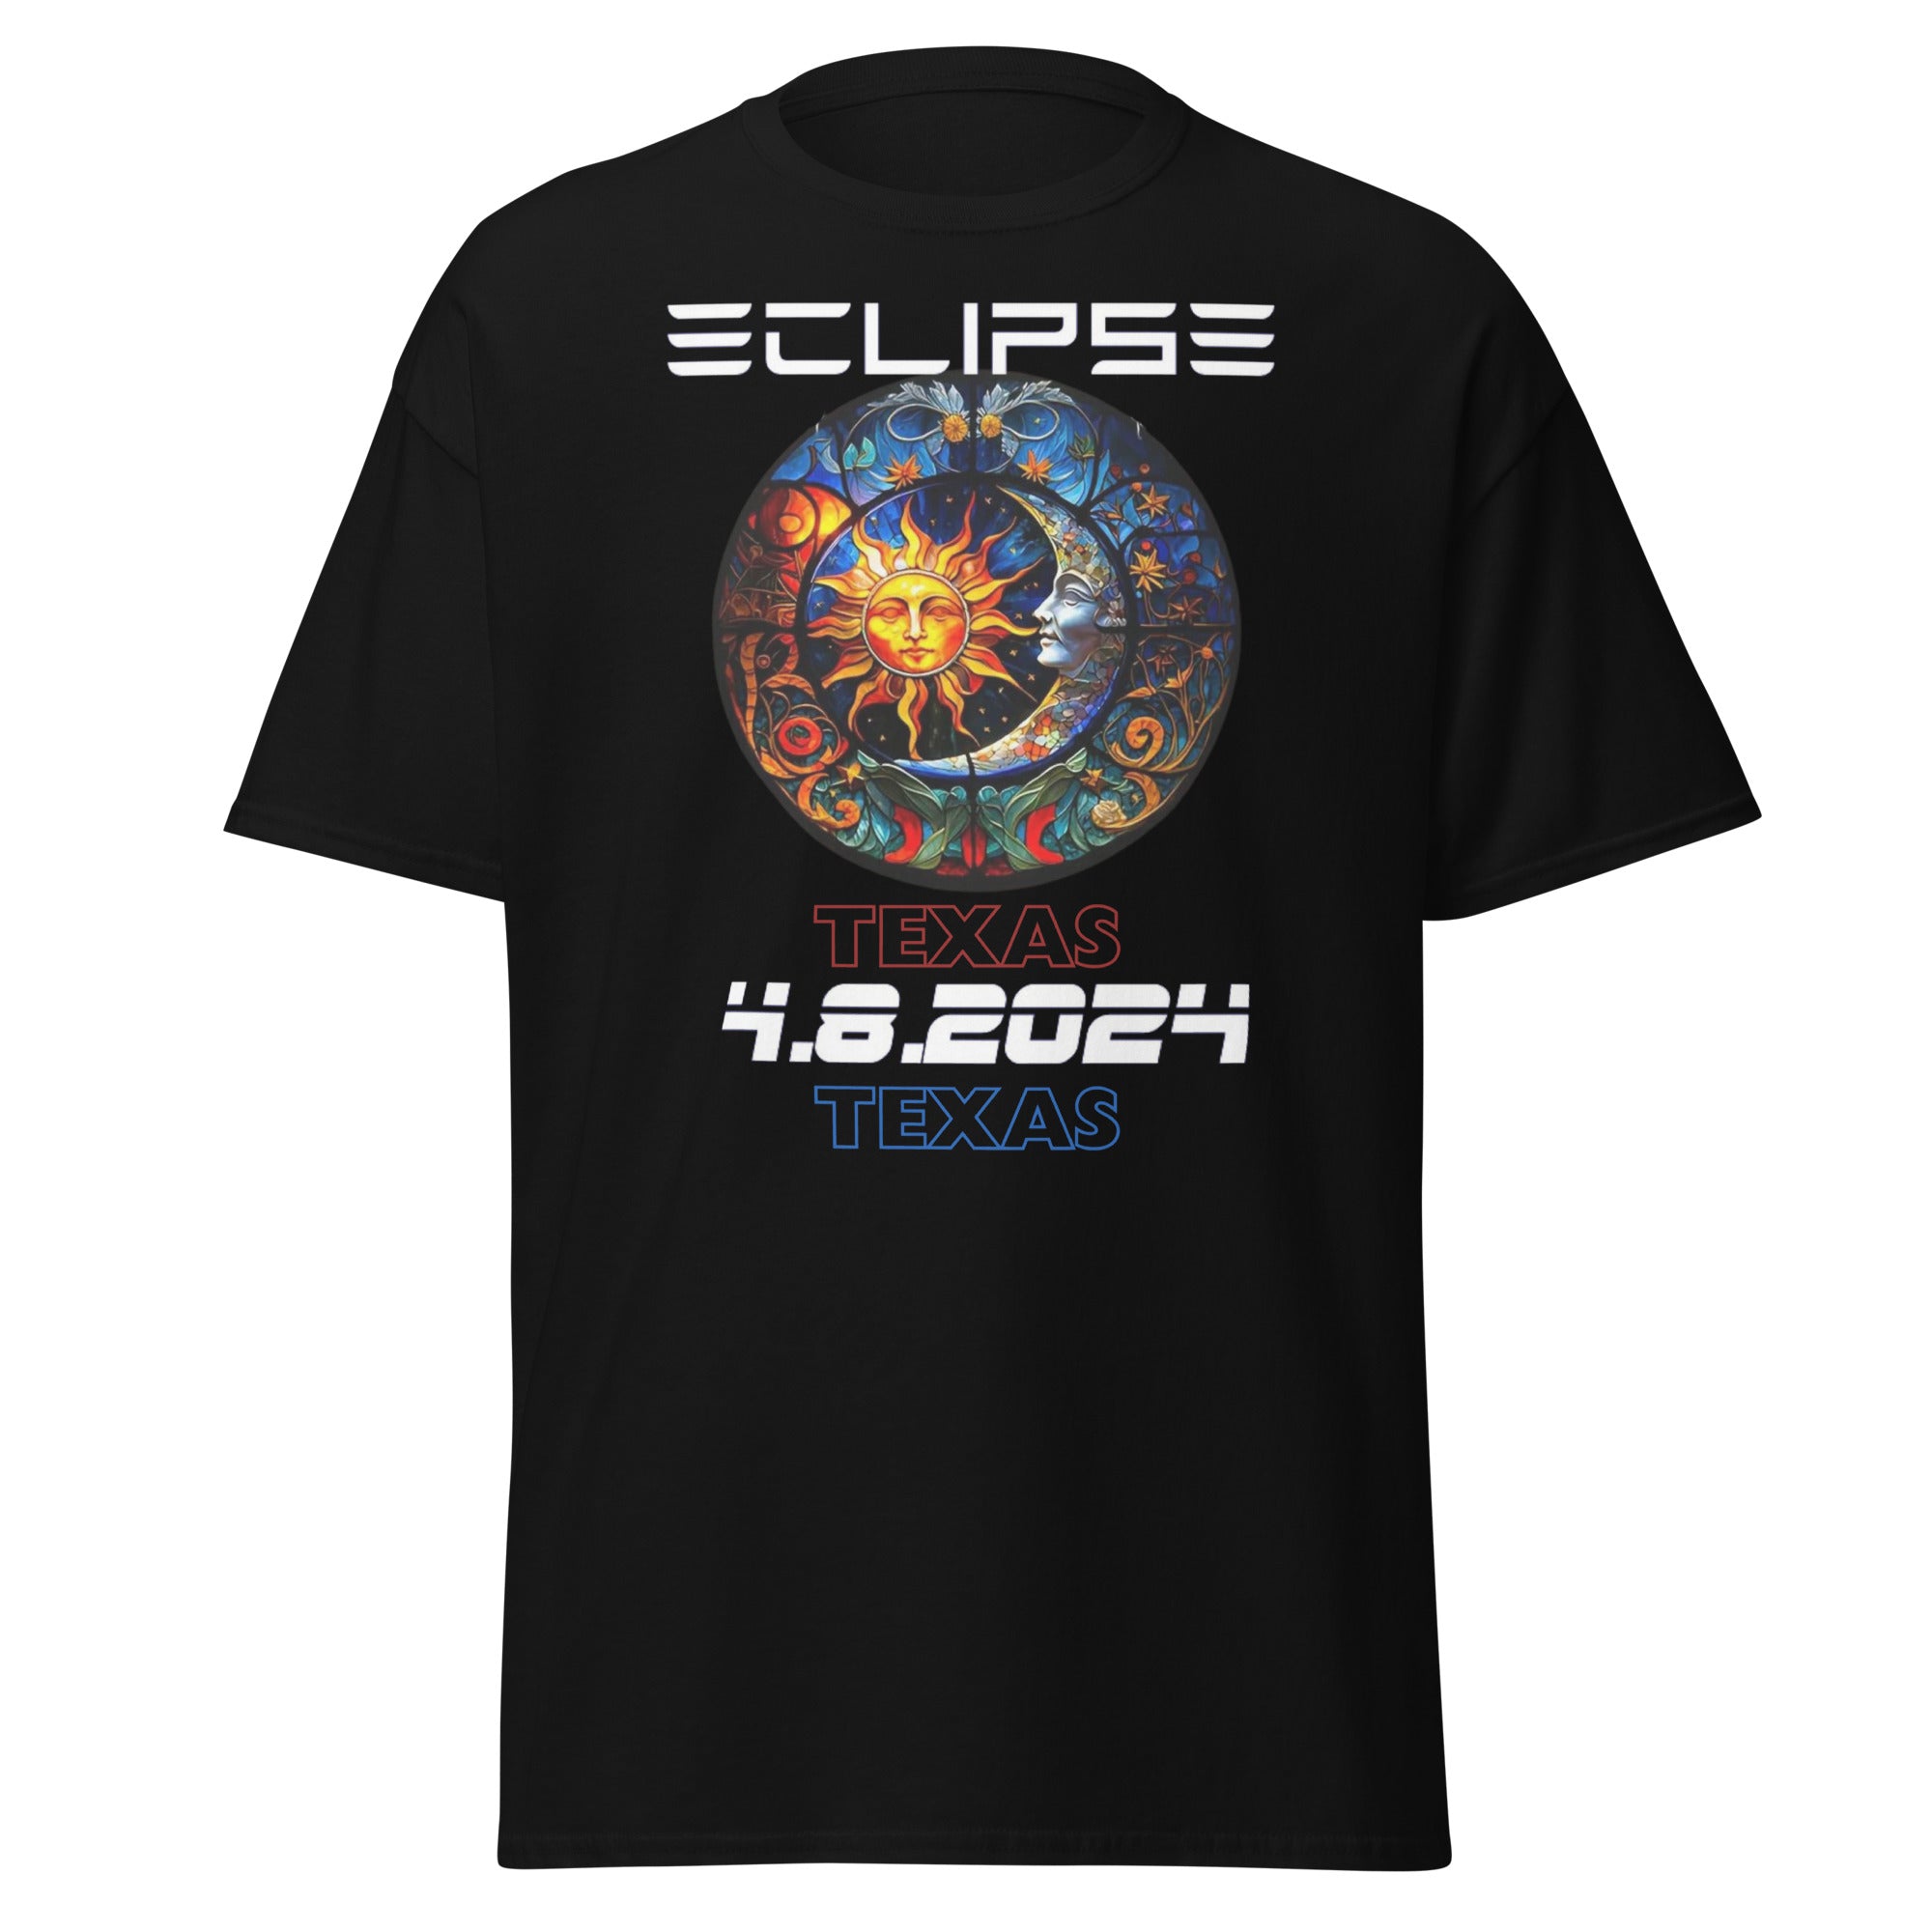 Eclipse Men's Opc 4 classic tee